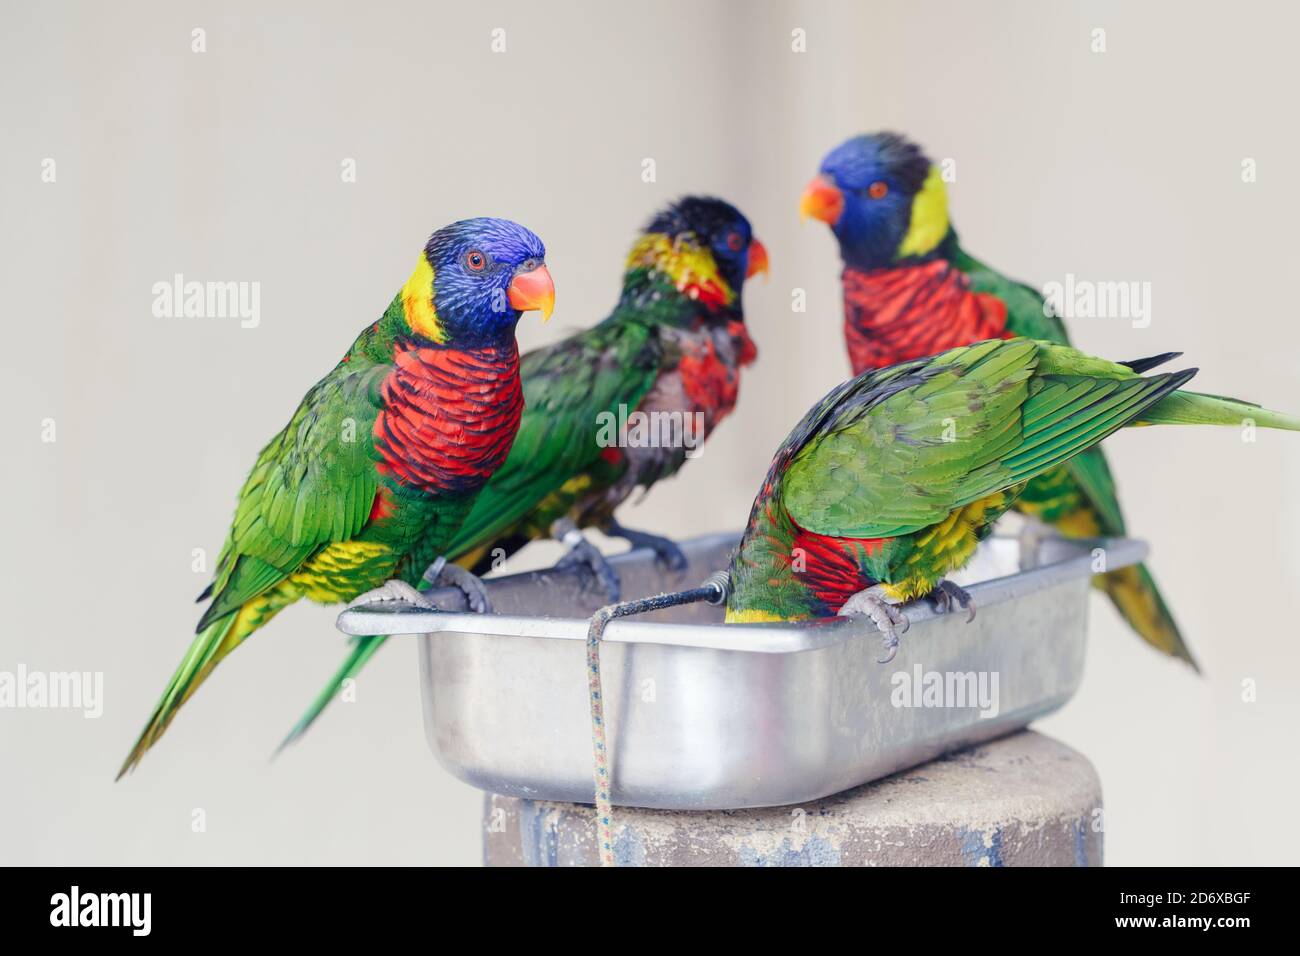 Groupe de plusieurs perroquets de Lorikeet se nourrissant de bol dans le zoo. Magnifiques animaux tropicaux sauvages oiseaux mangeant nectar. Beauté de la nature sauvage. Banque D'Images